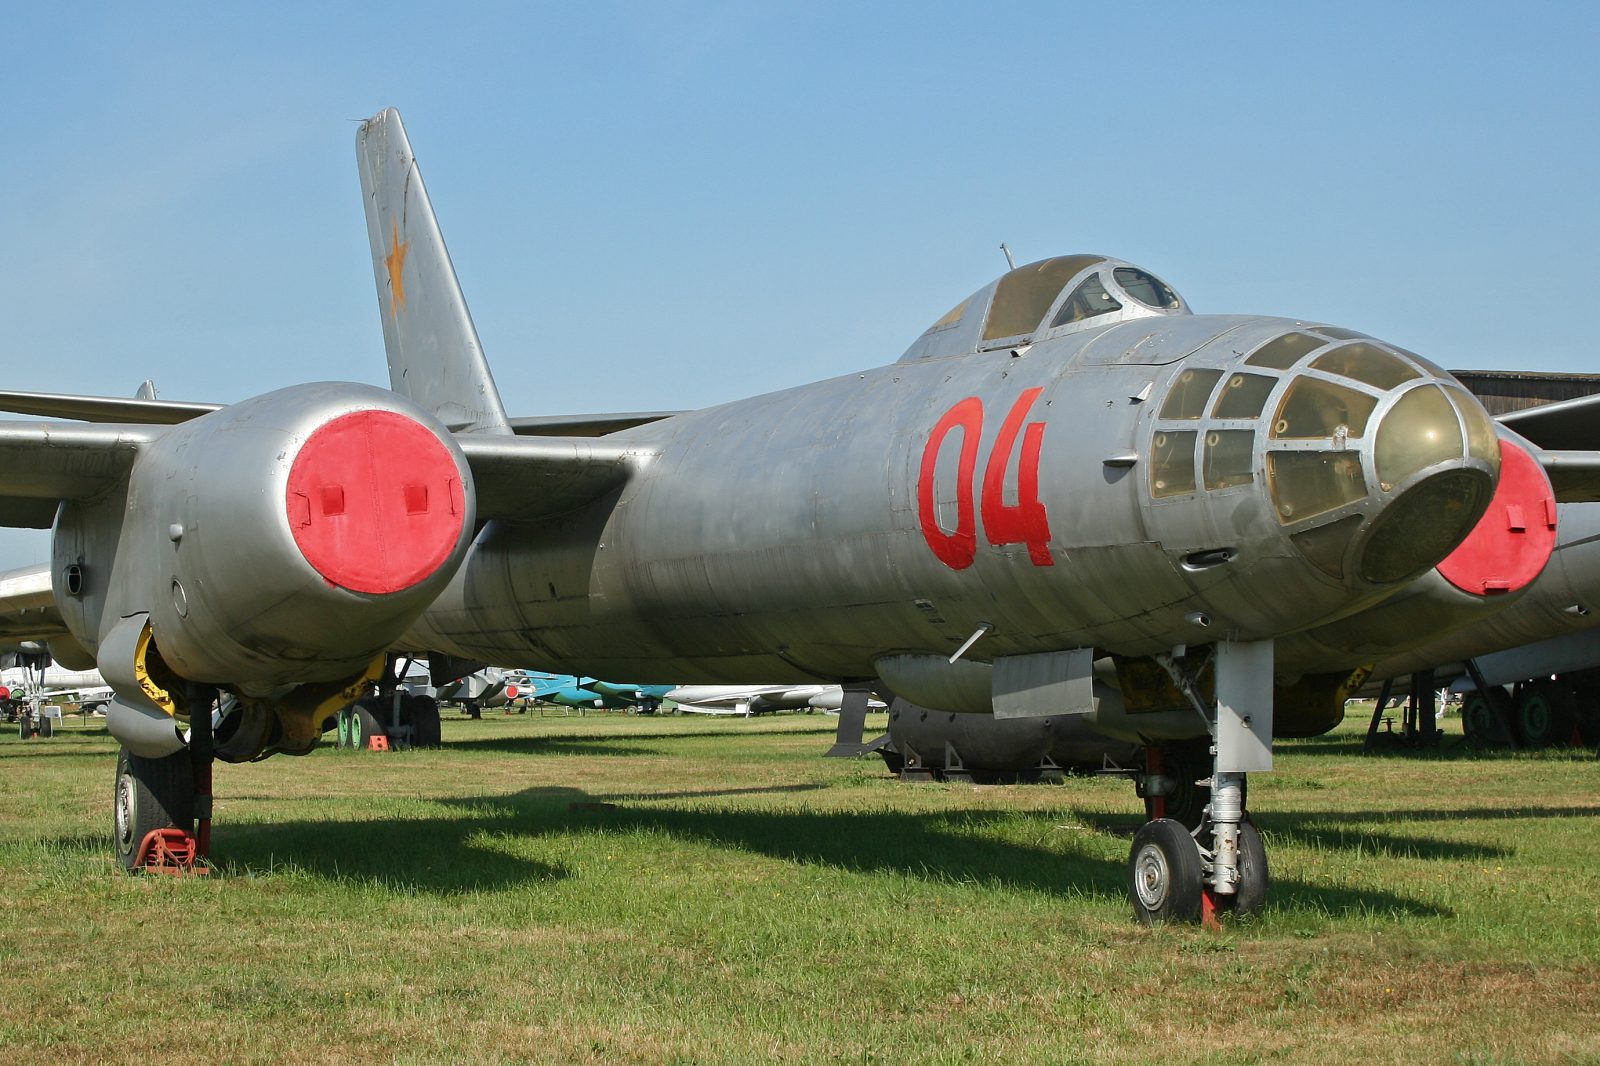 Ilyushin IL-28 Beagle: The Soviet Tactical Medium Bomber Aircraft